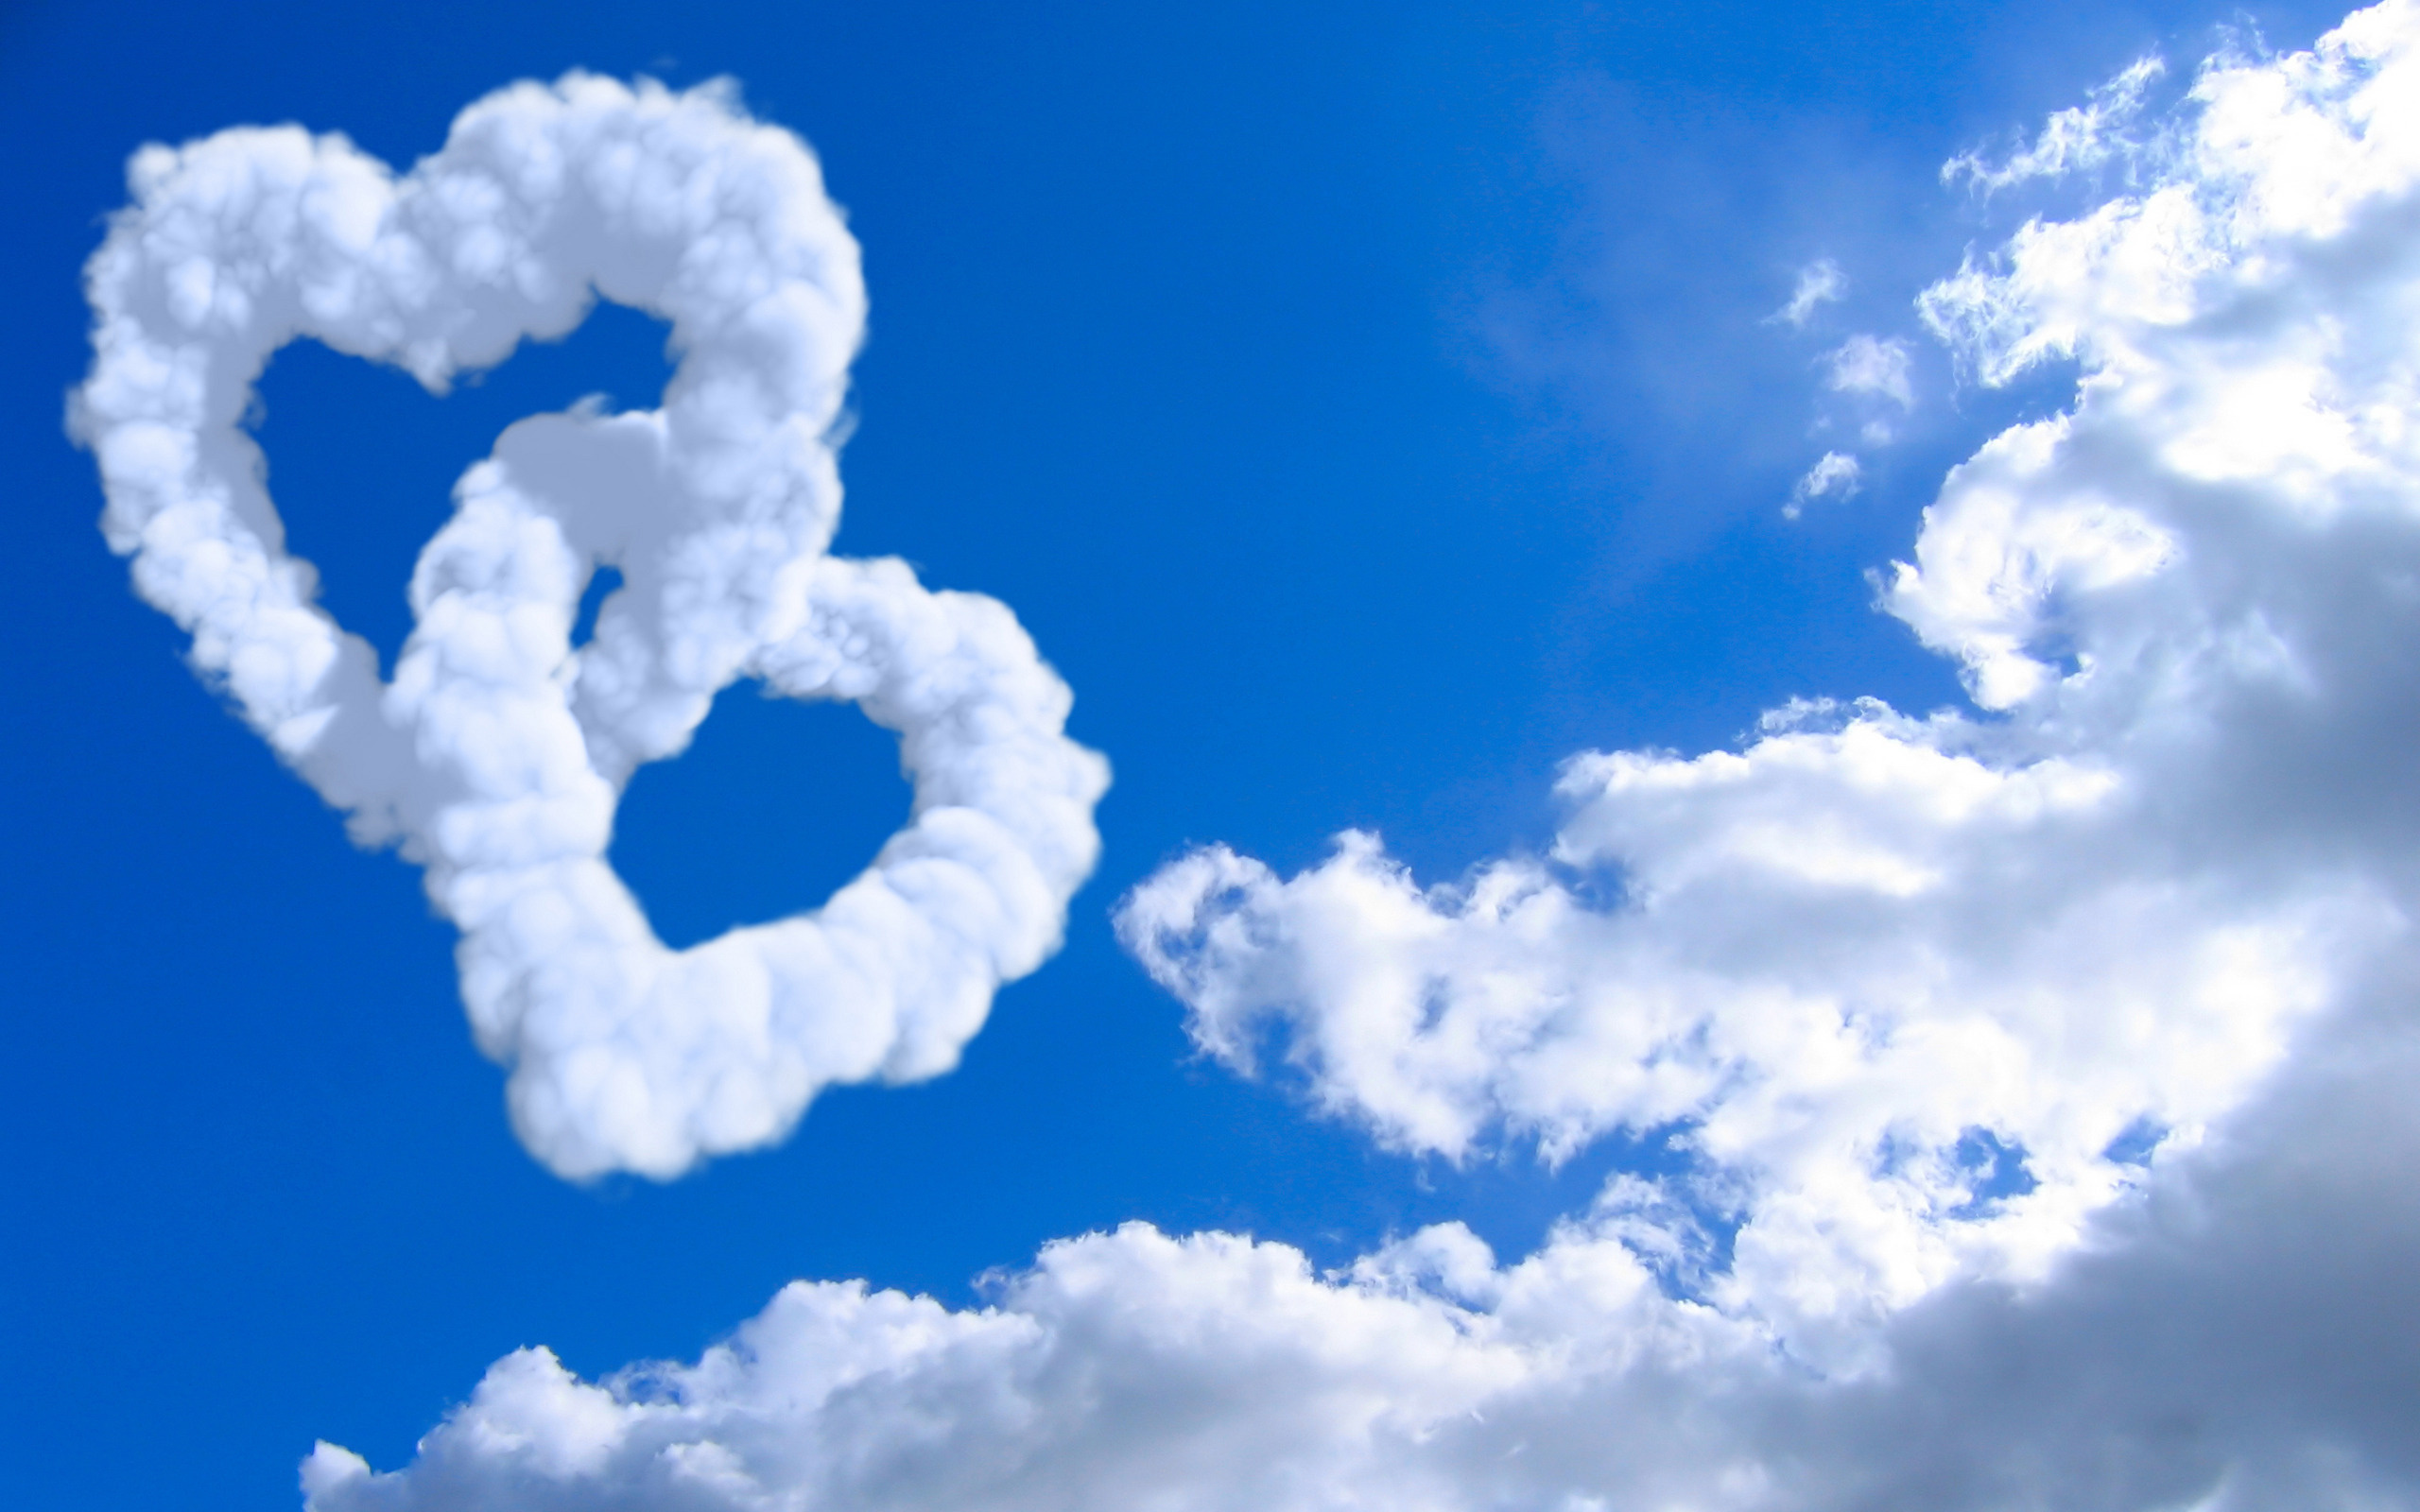 Clouds on Valentine's Day Desktop wallpaper 1280x720